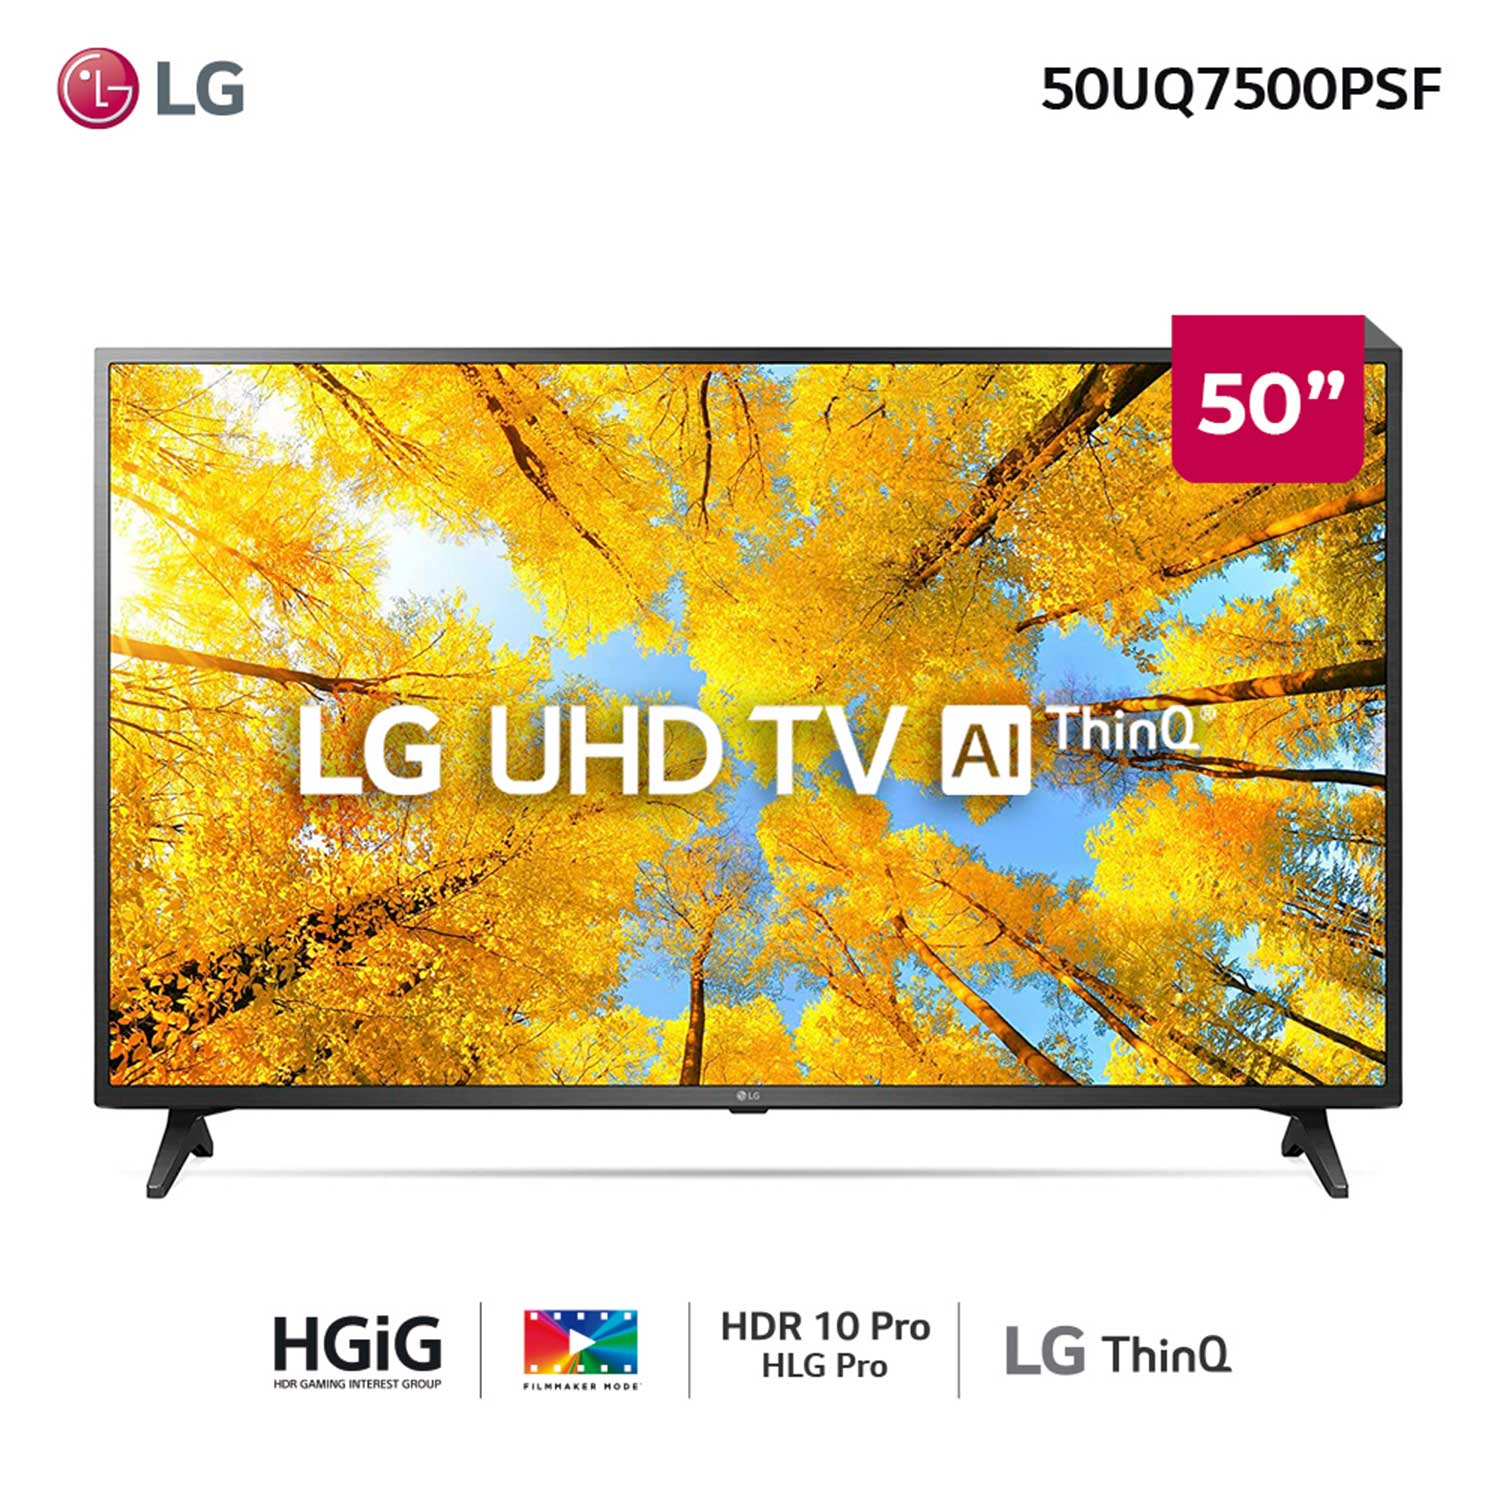 Televisores y Smart TV 4K, UHD, Full HD y otros - El Dorado